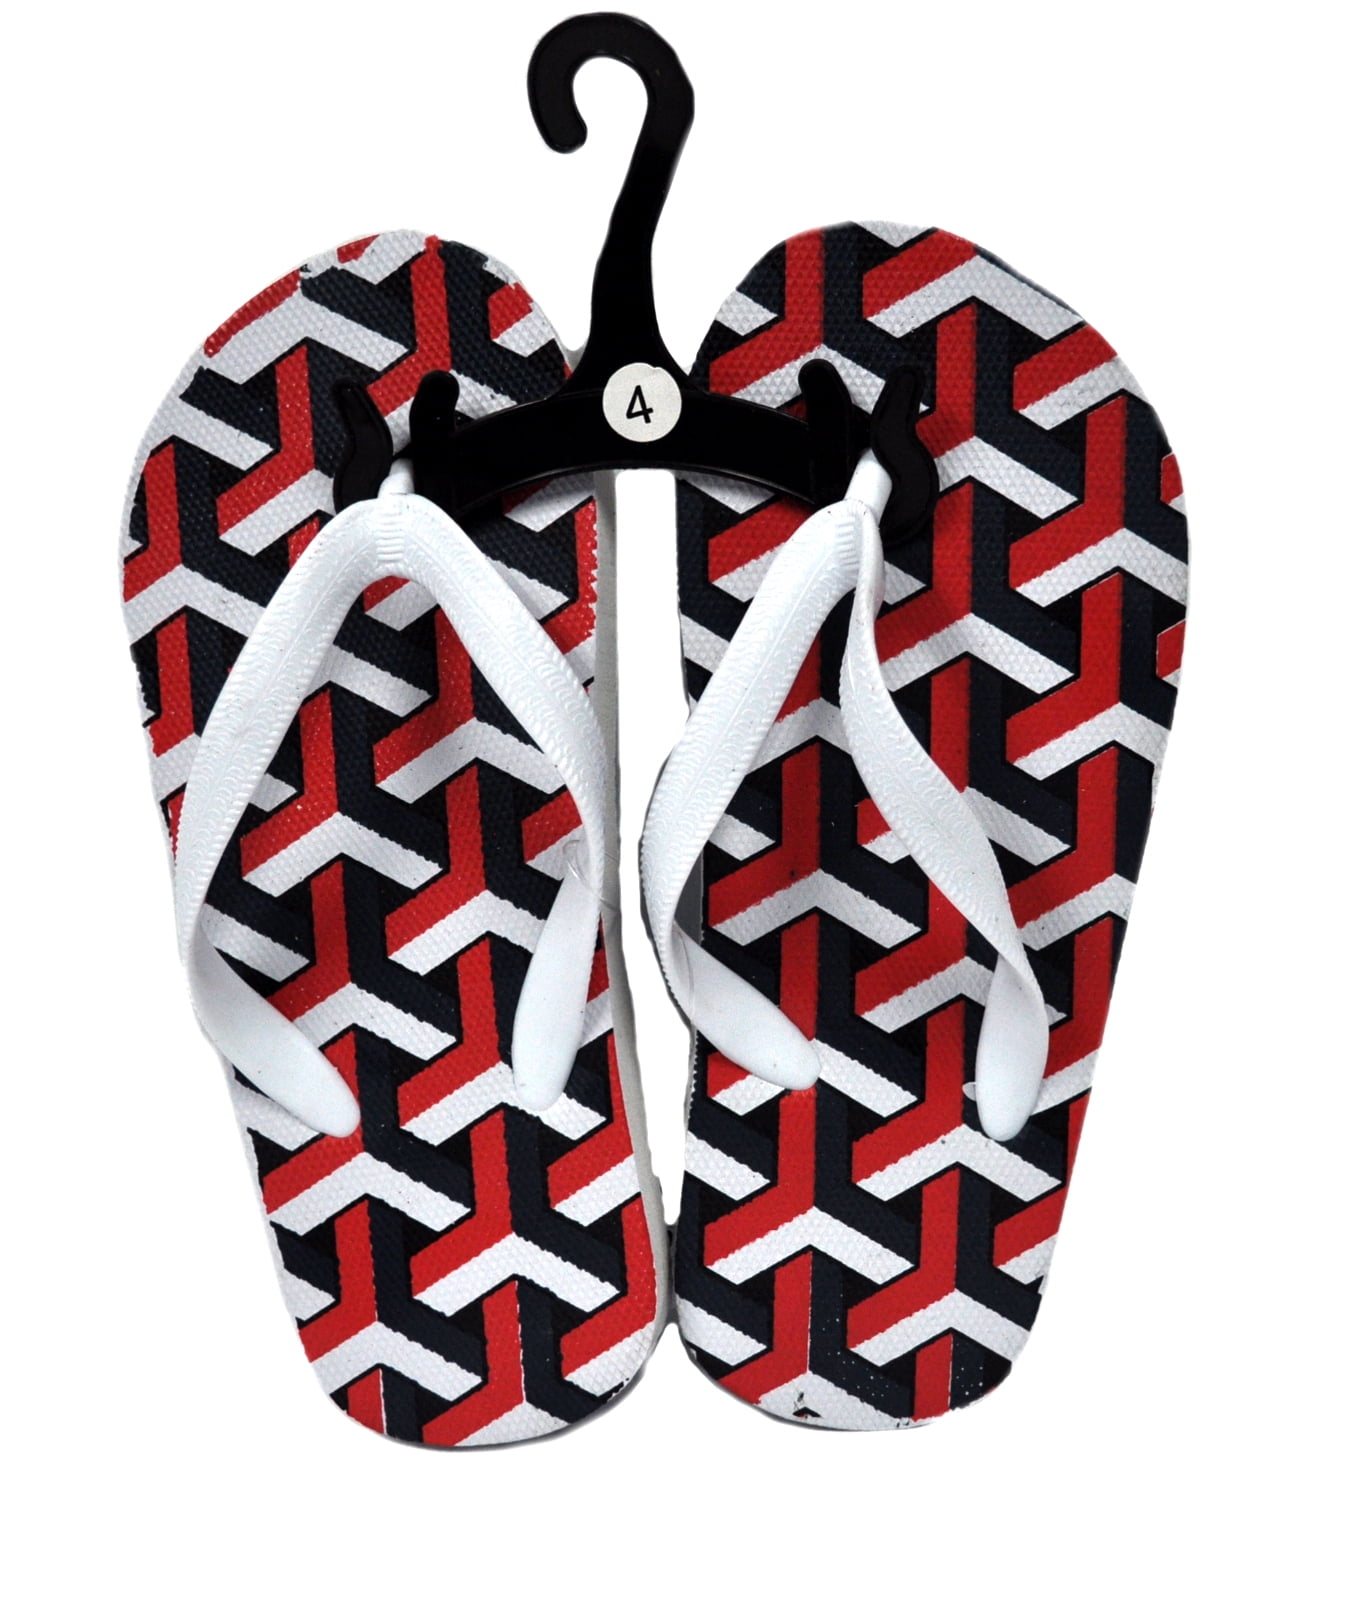 patterned flip flops